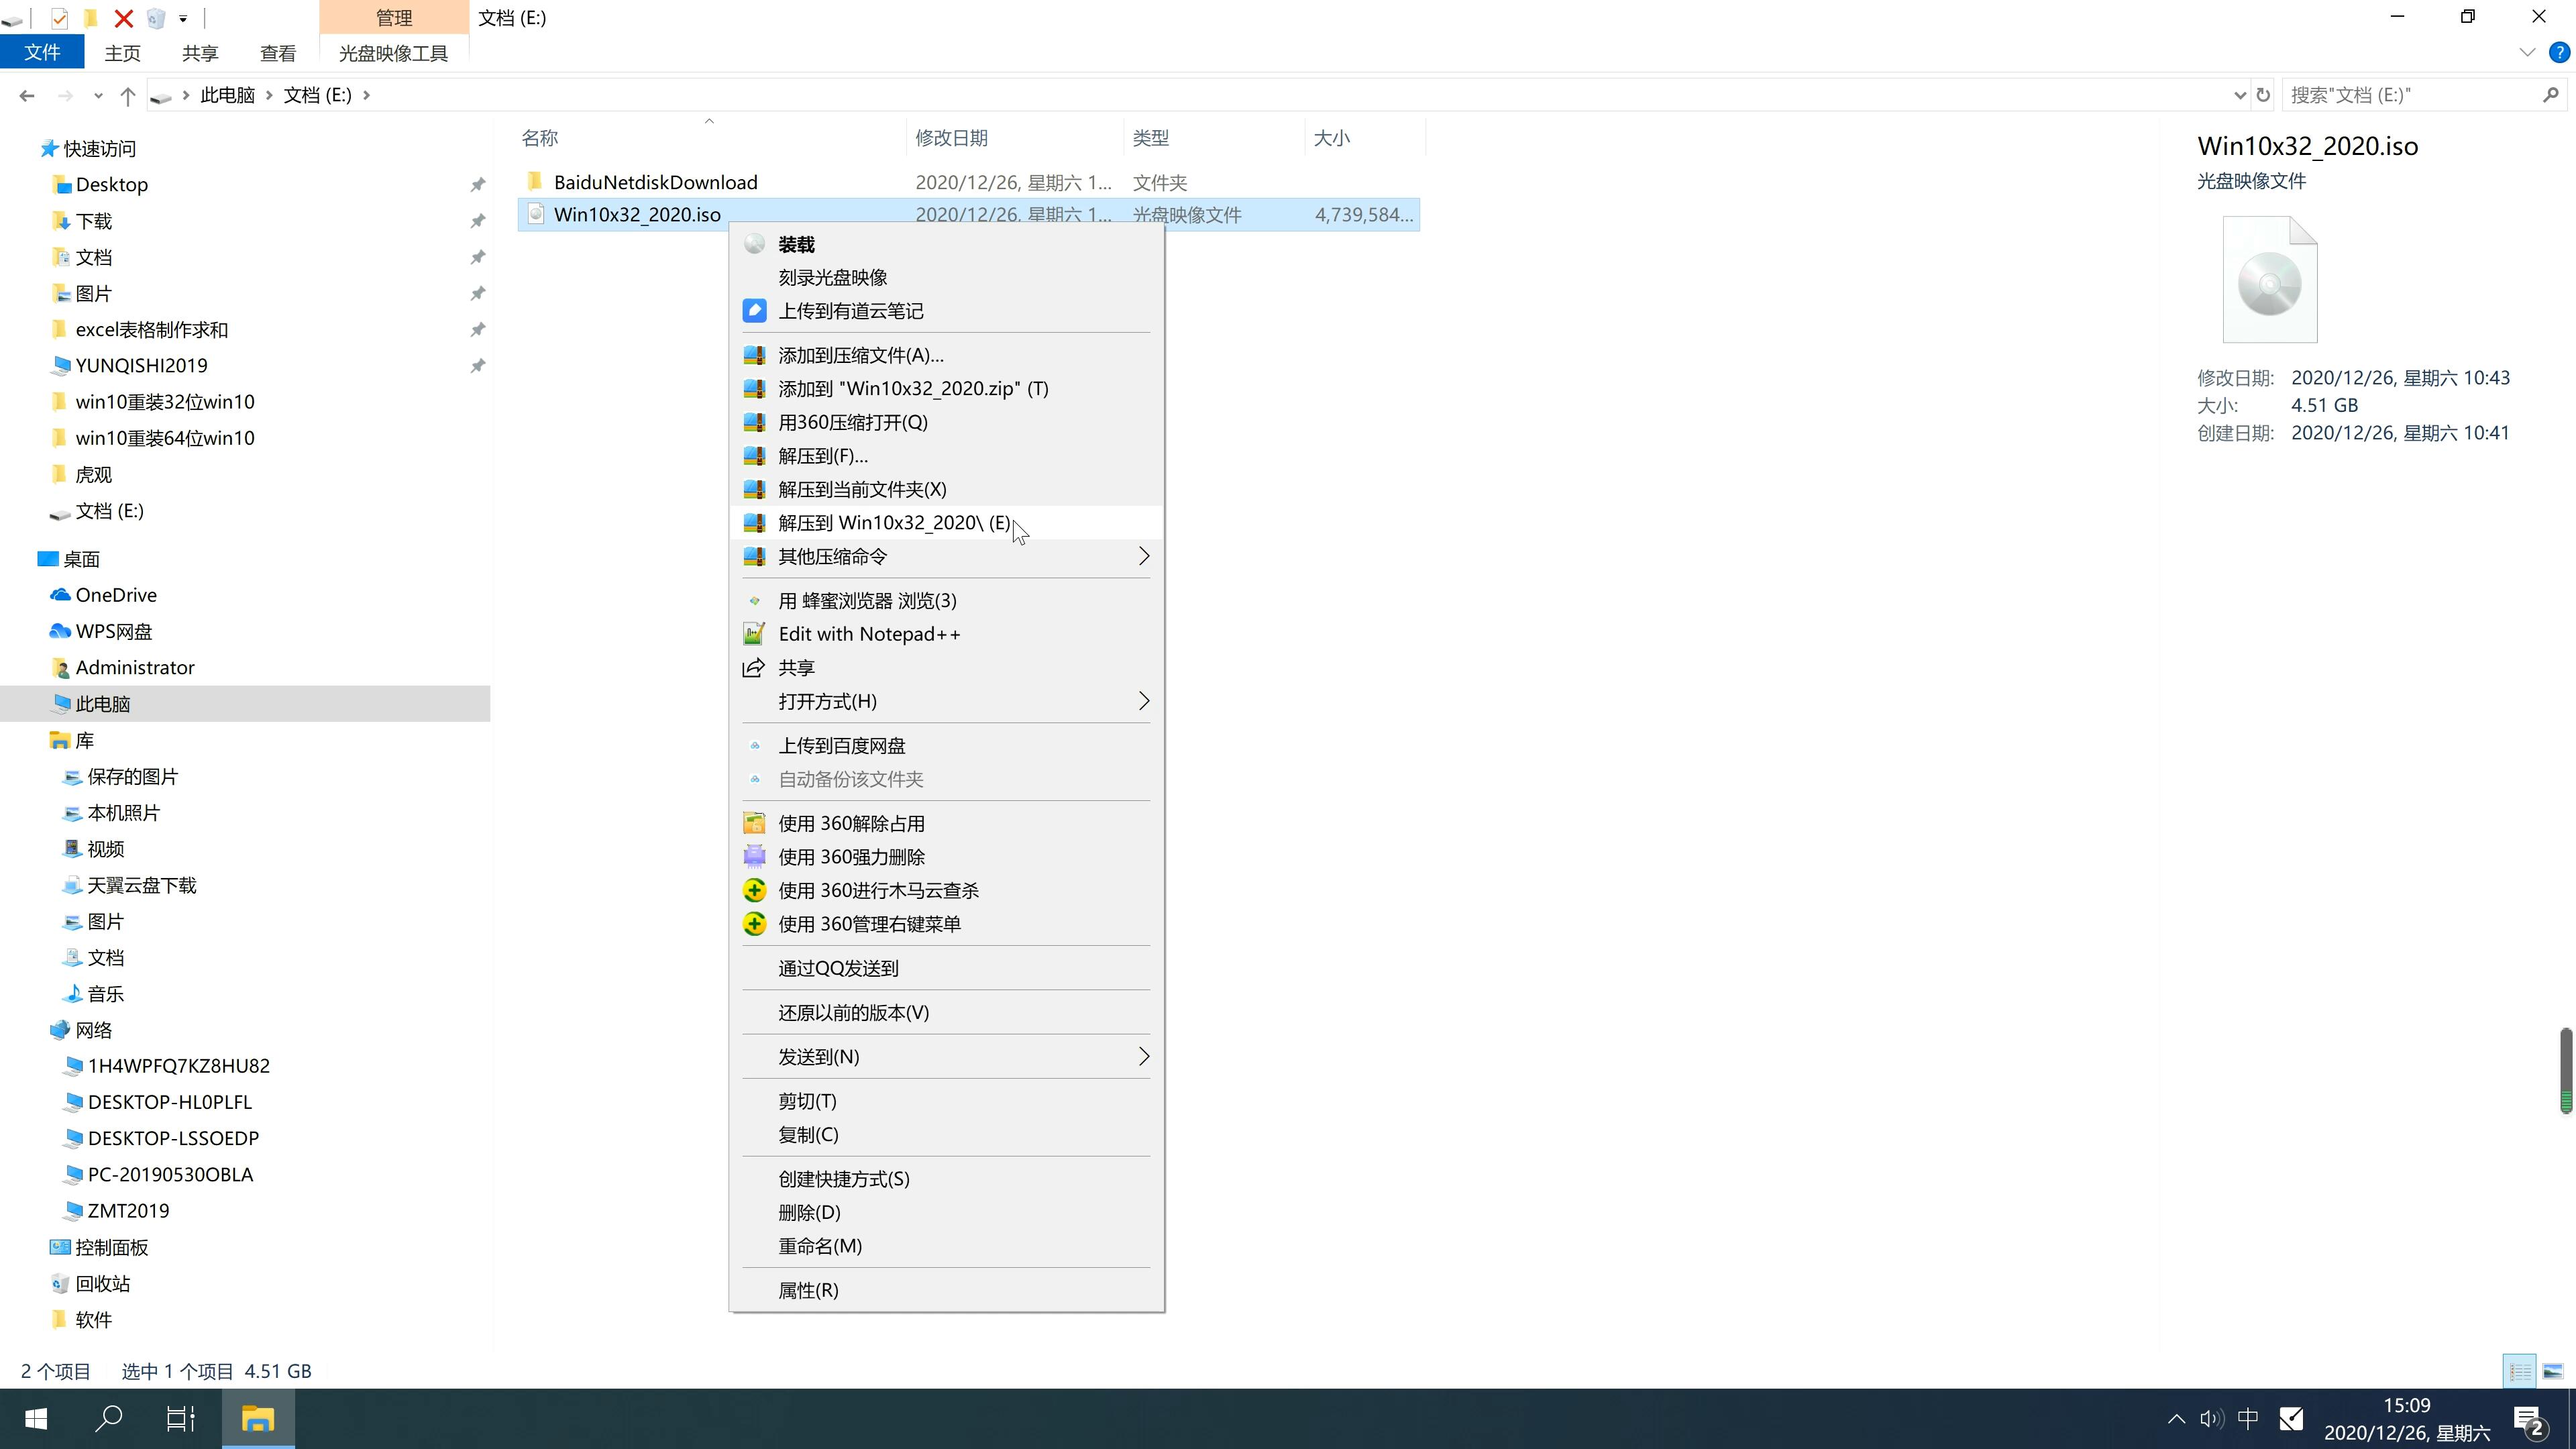 戴尔笔记本专用系统 Ghost windows10 x86 SP1 纯净中文旗舰版系统下载 V2021.01(2)